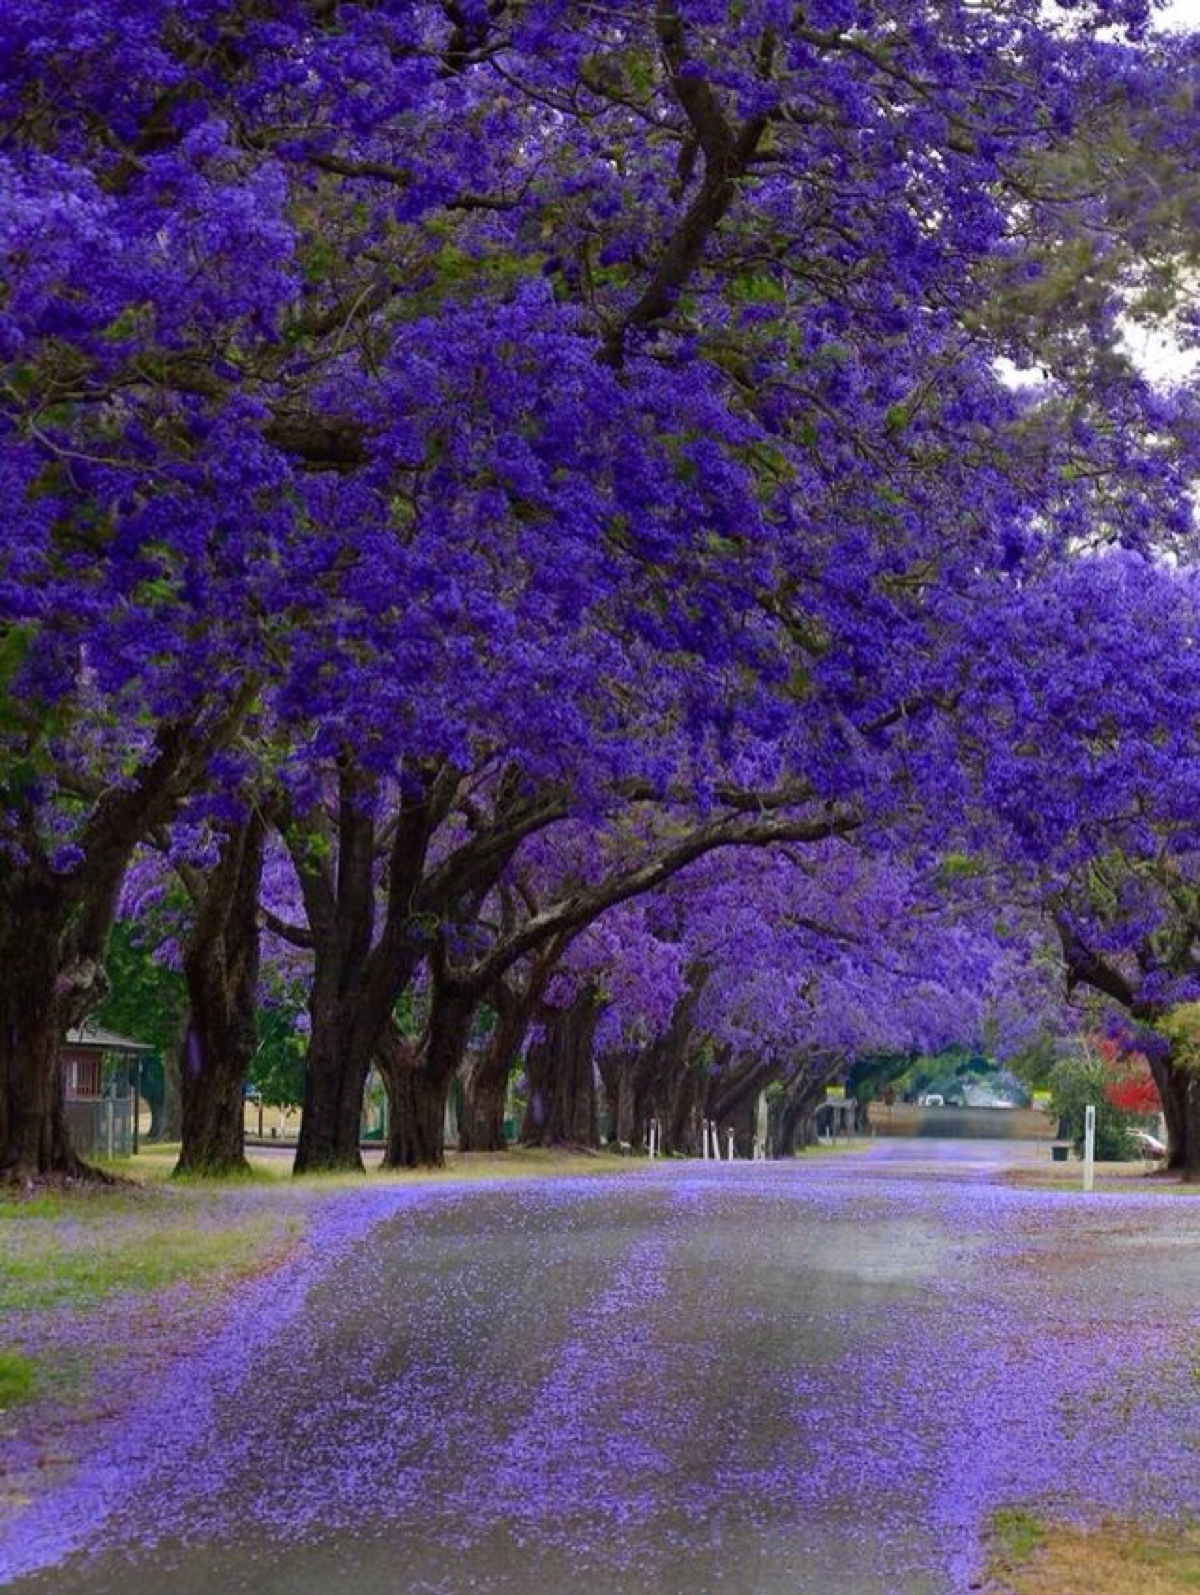 无数的蓝花楹在澳大利亚灿烂绽放,把这个国家变成了一个紫色仙境